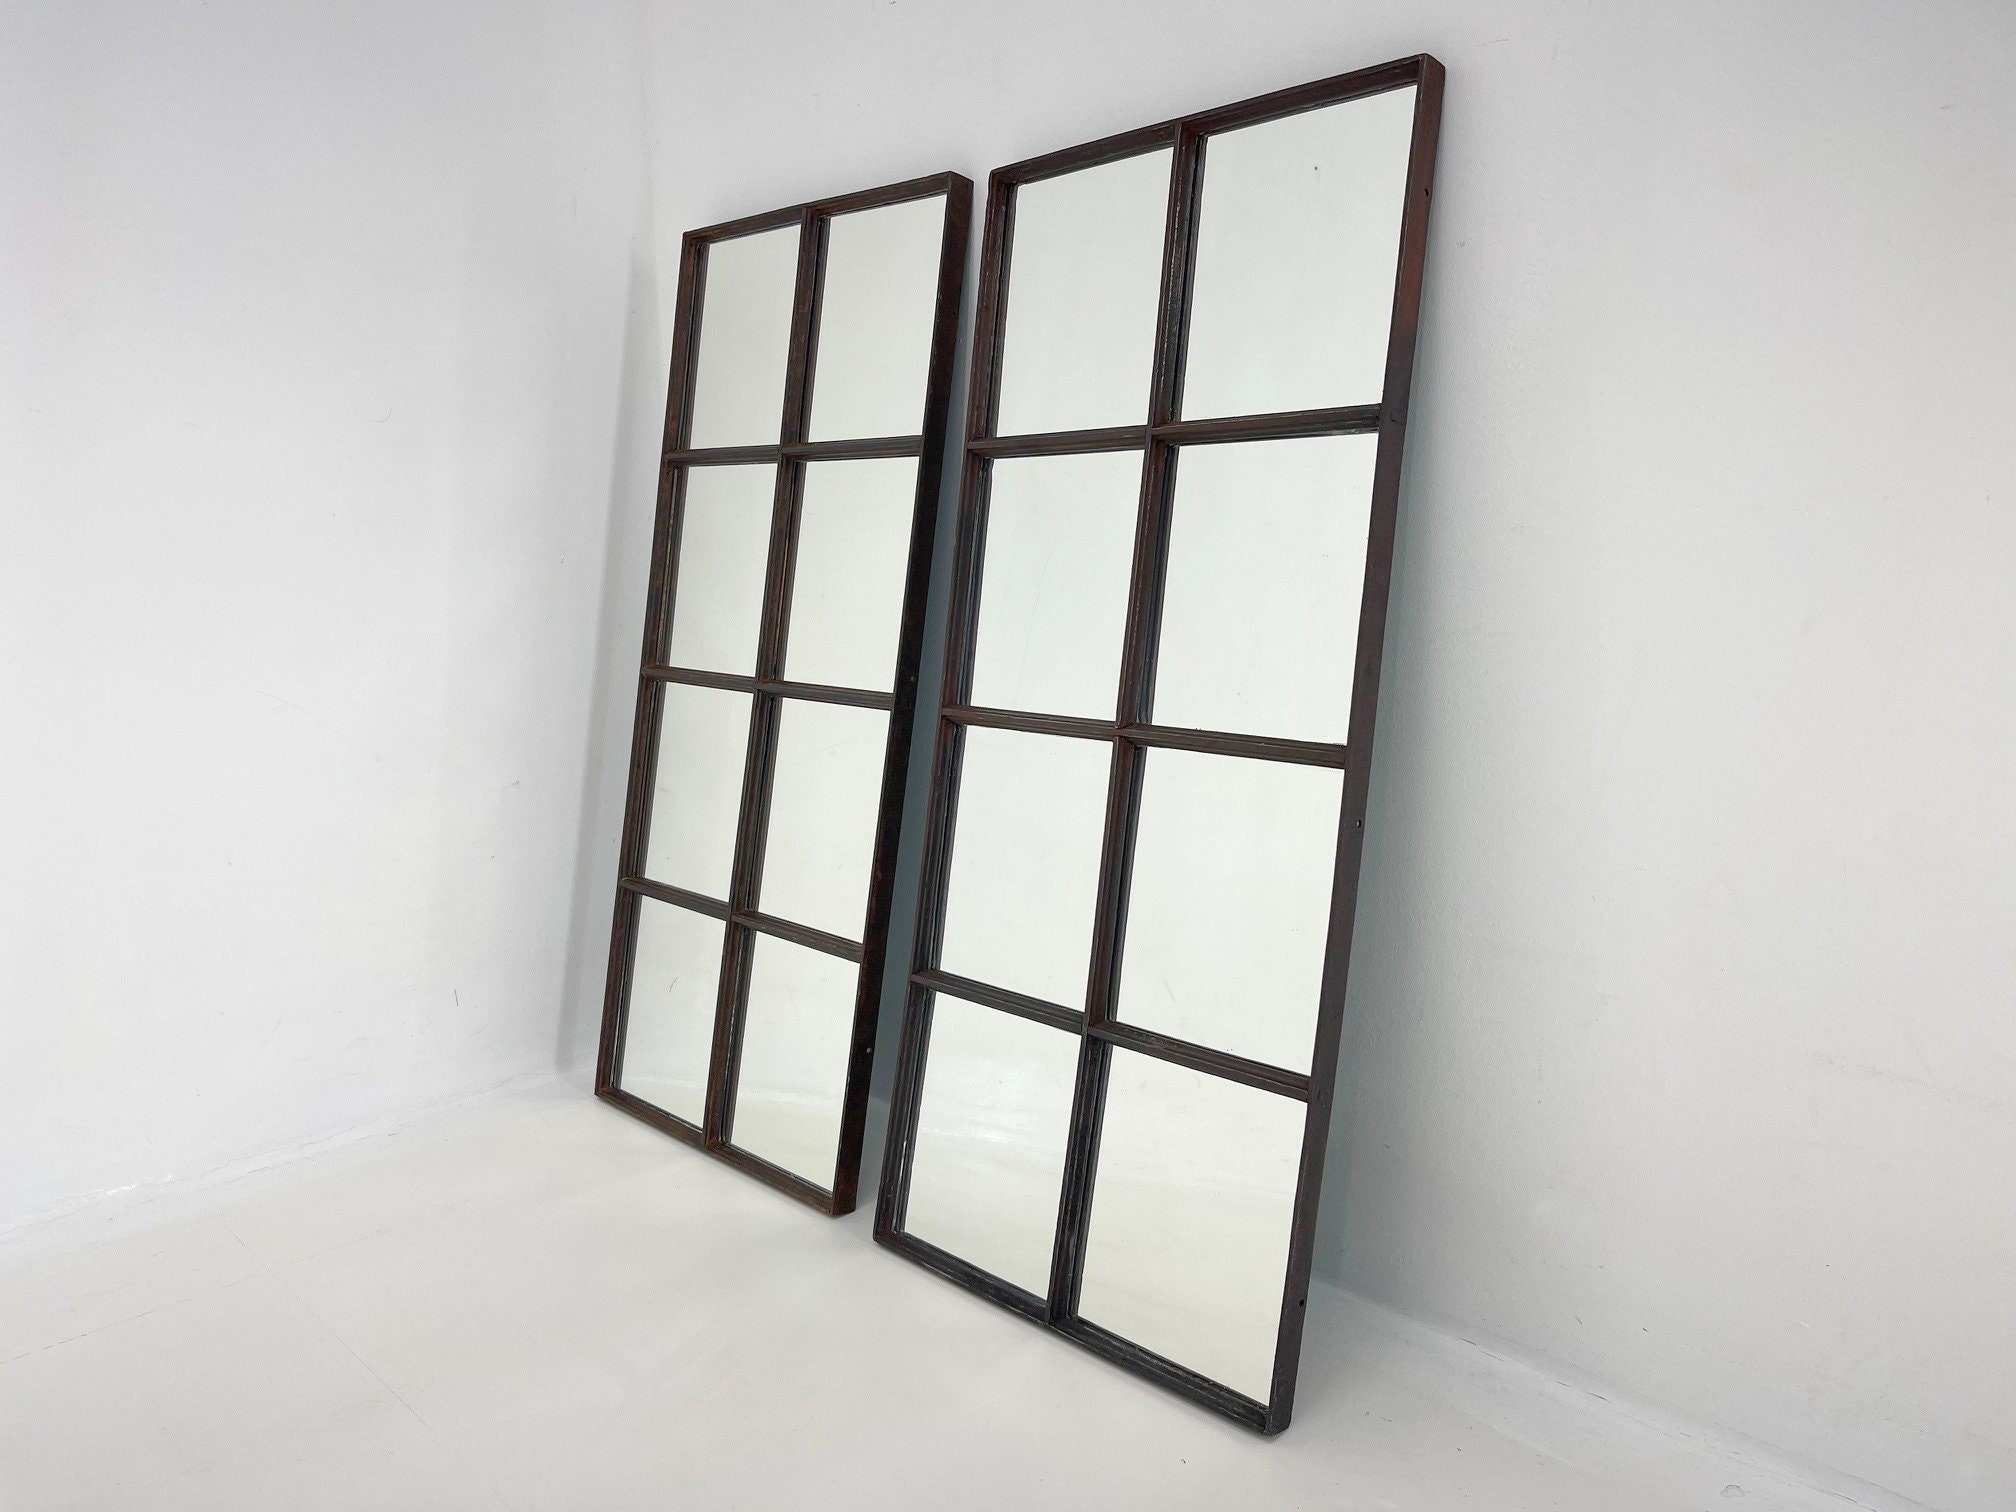 Gift Decor Spiegel Wandspiegel Fenster Schwarz polystyrol 80 x 80 x 3 cm 3  Stück